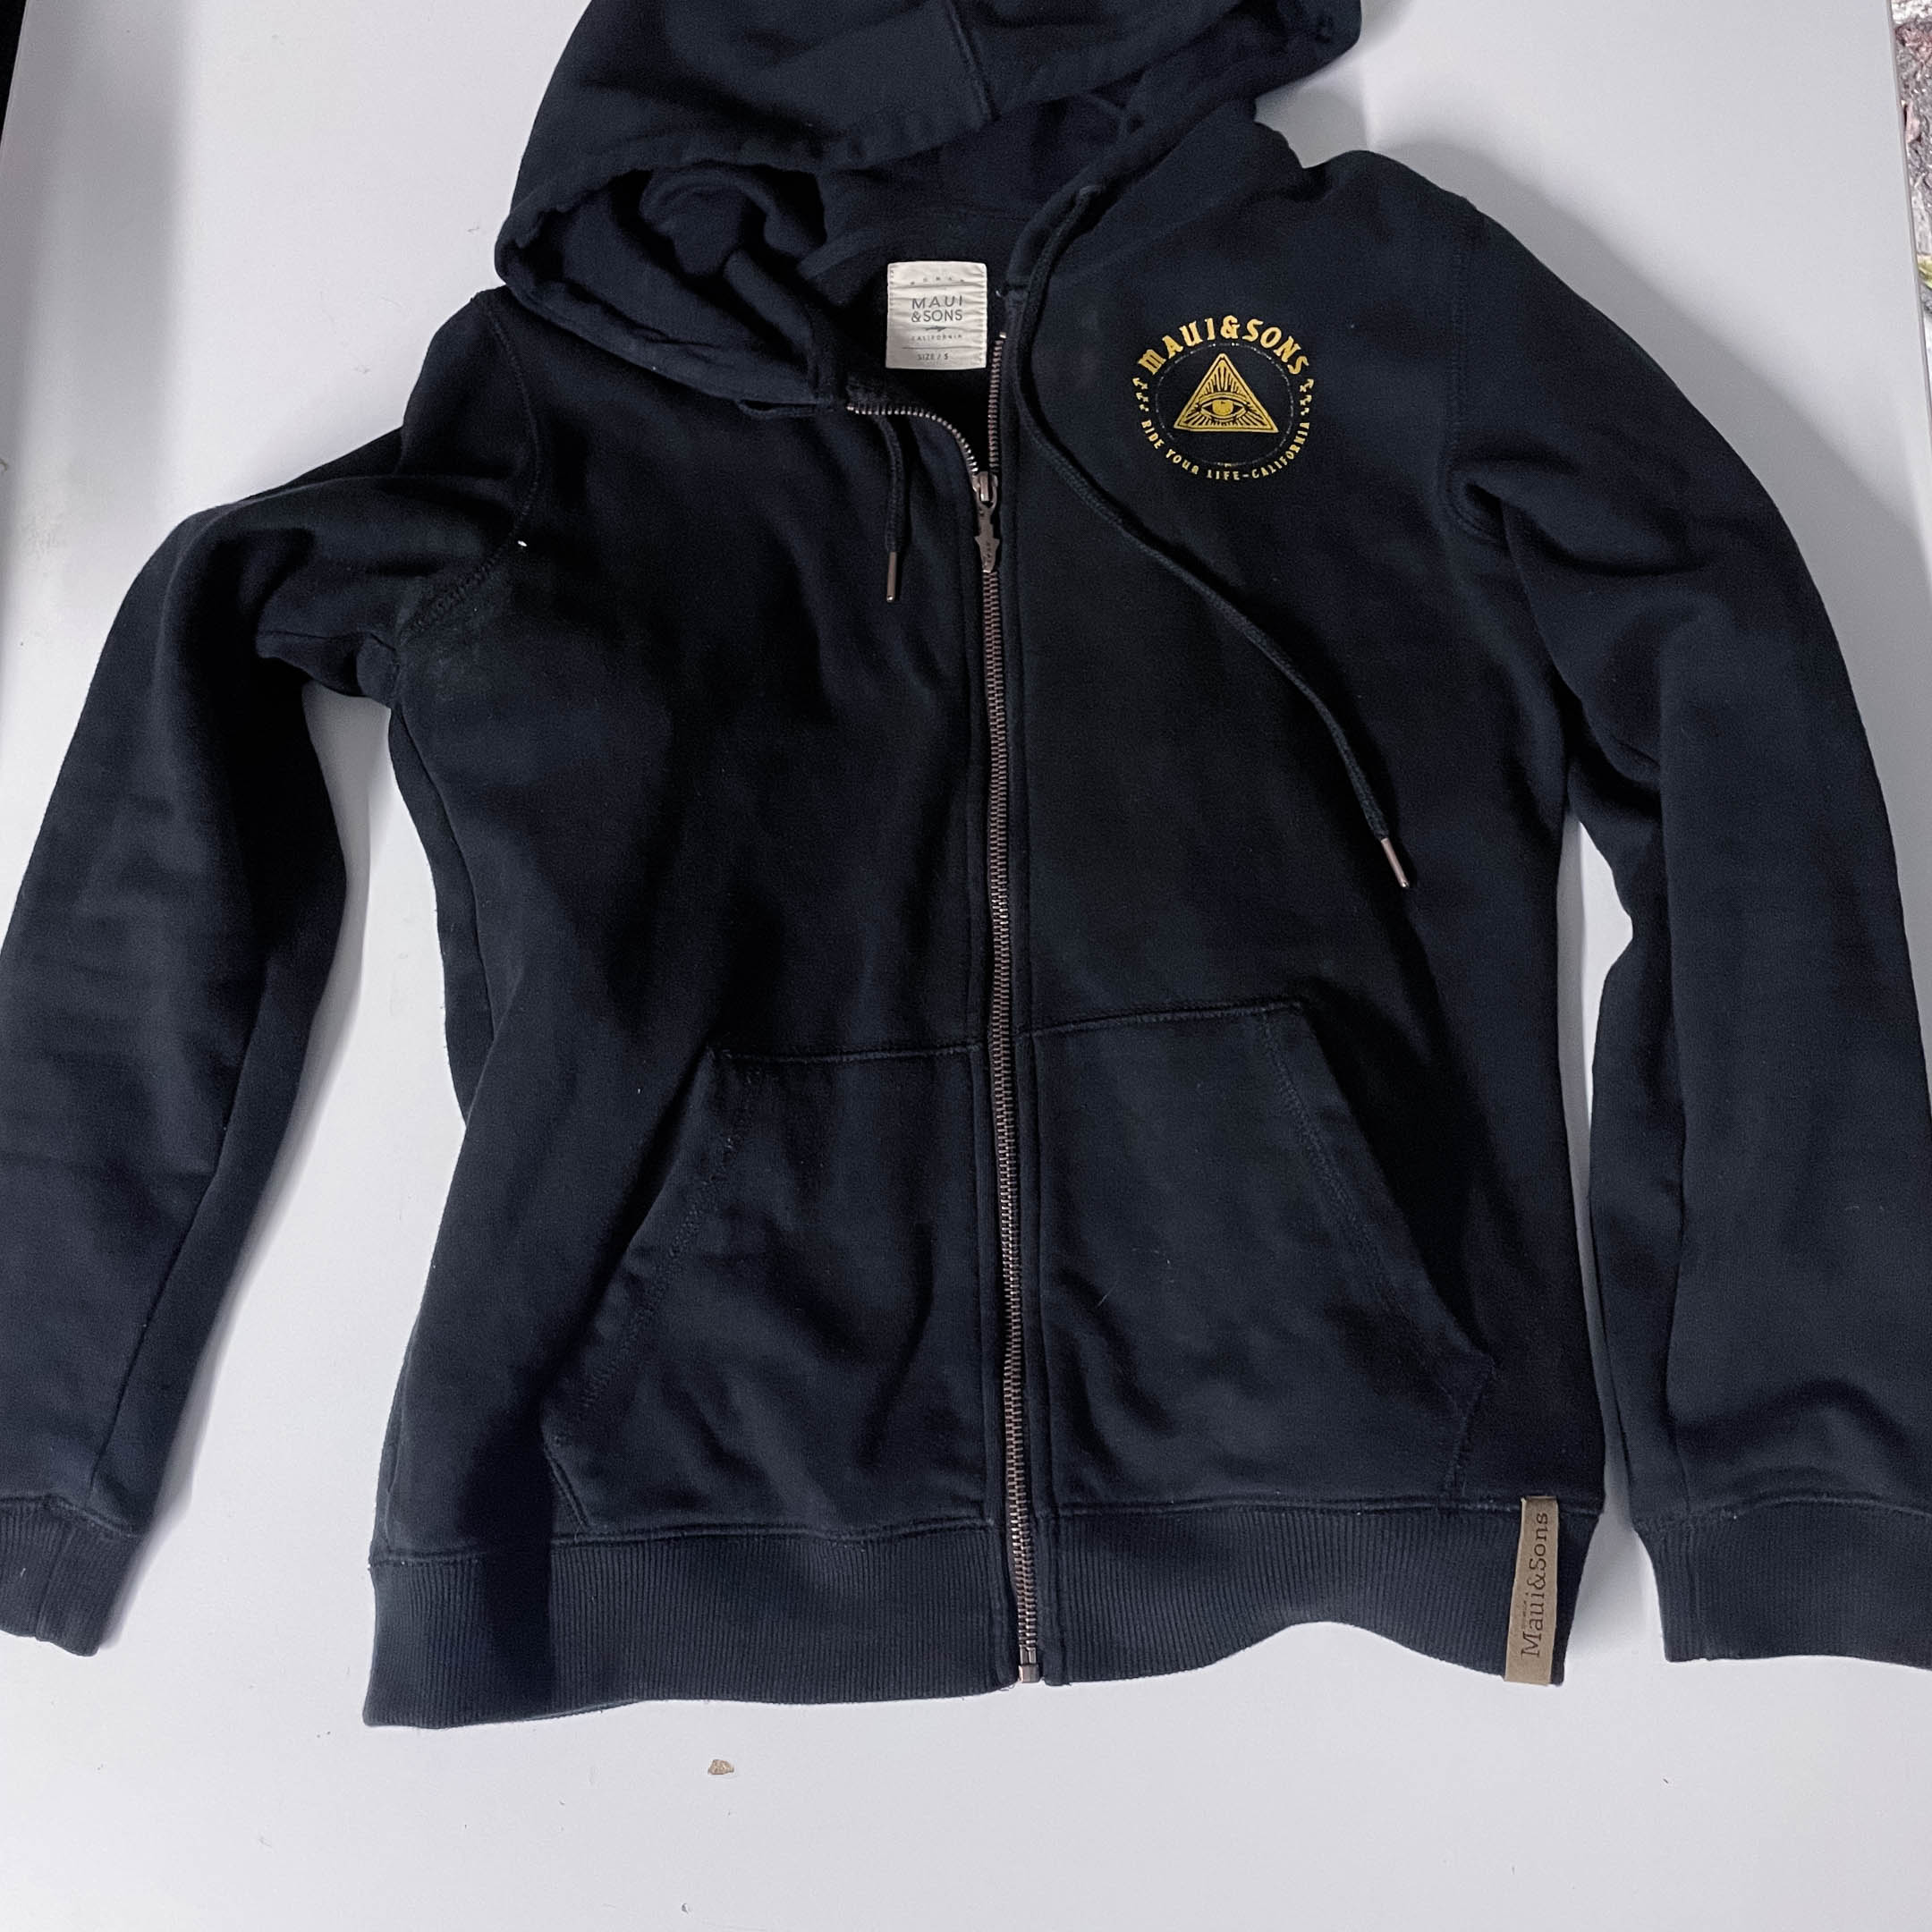 Vintage Maui & sons womens black full zip small hoodie jacket